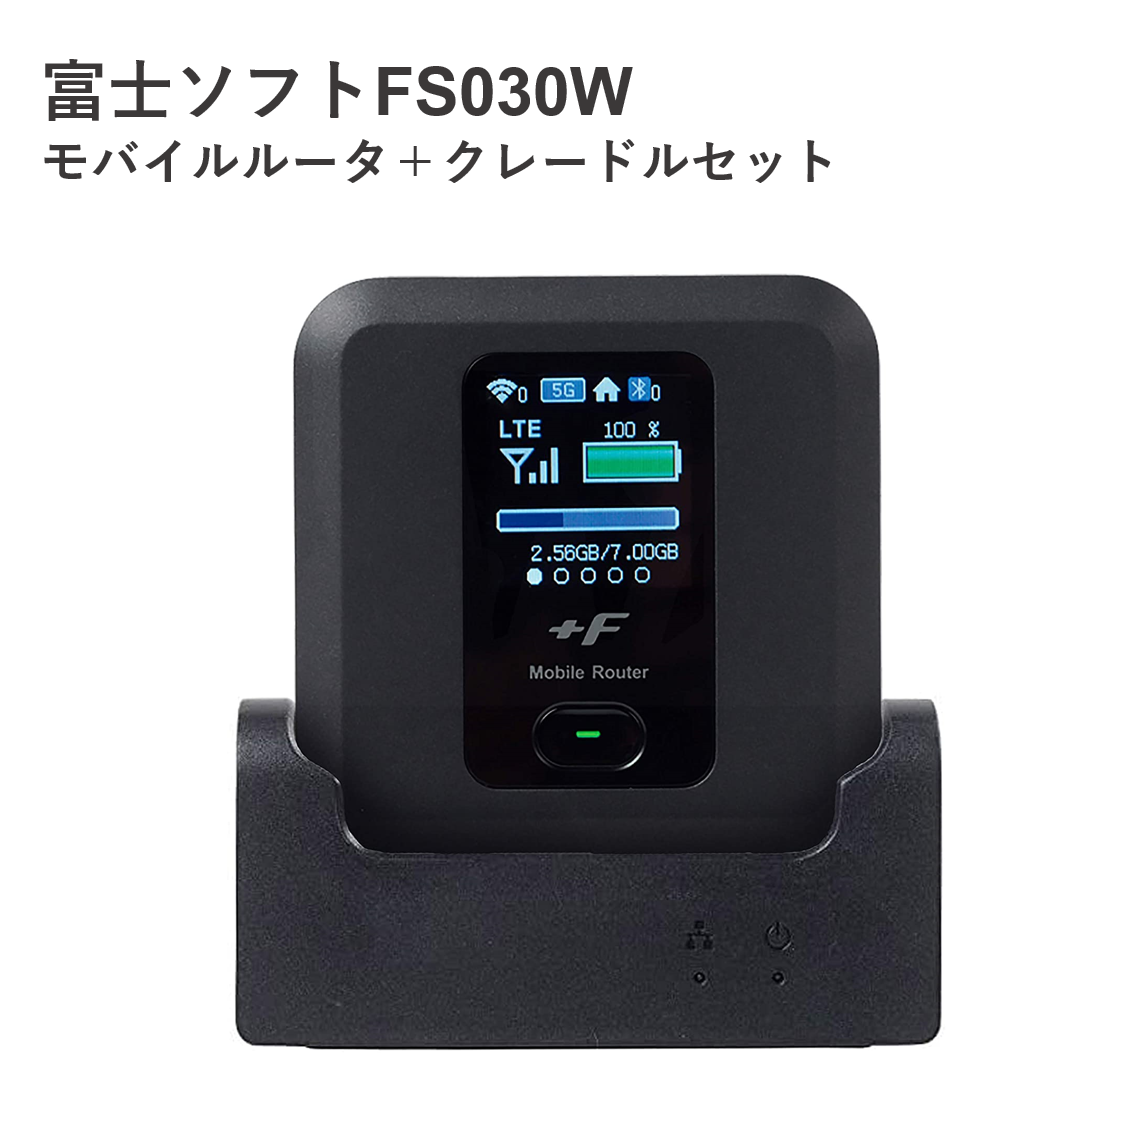 富士ソフト+F FS030W専用クレードルSIMフリーモバイルルータ10台セット